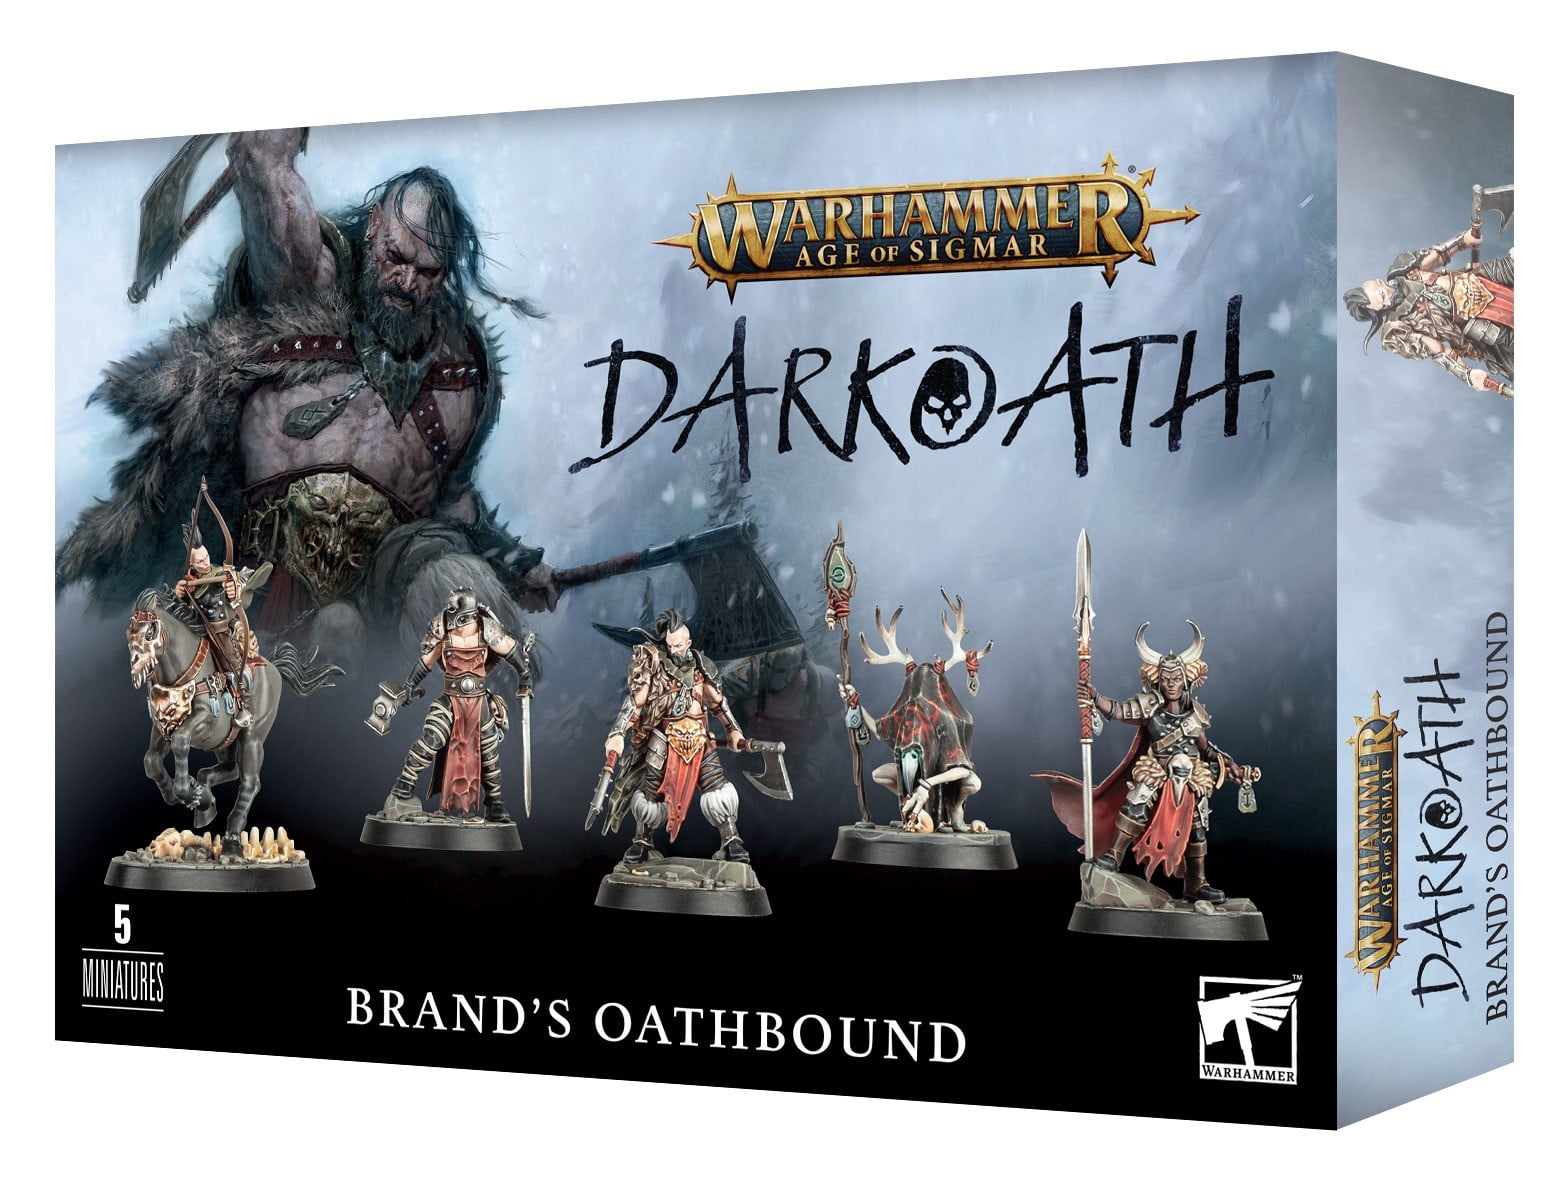 Darkoath Brand's Oathbound